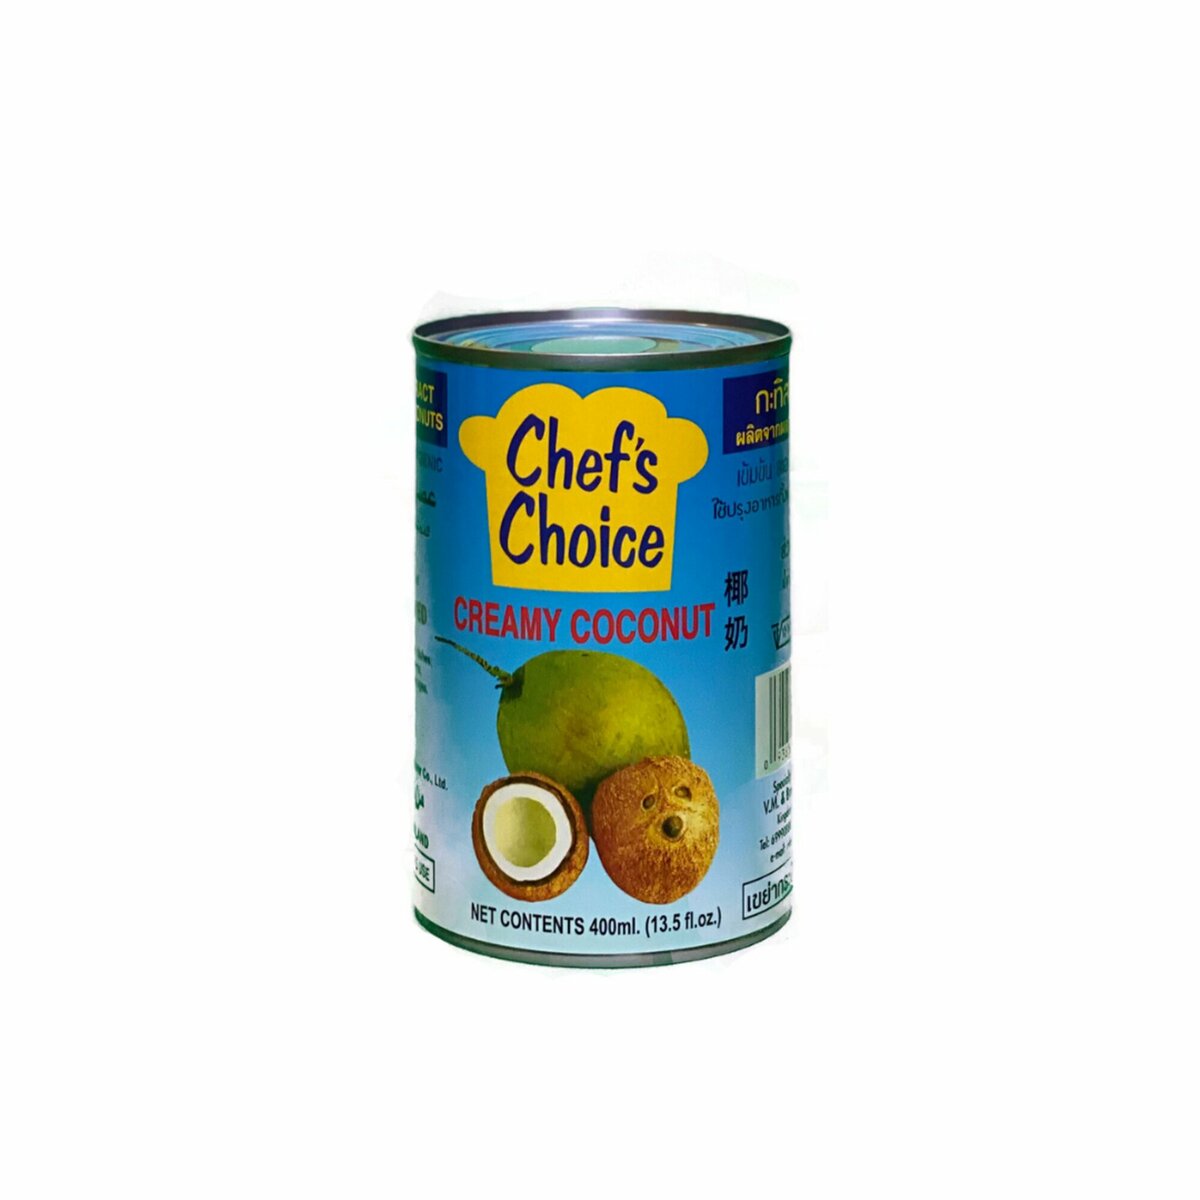 Chefs Choice Creamy Coconut 400ml